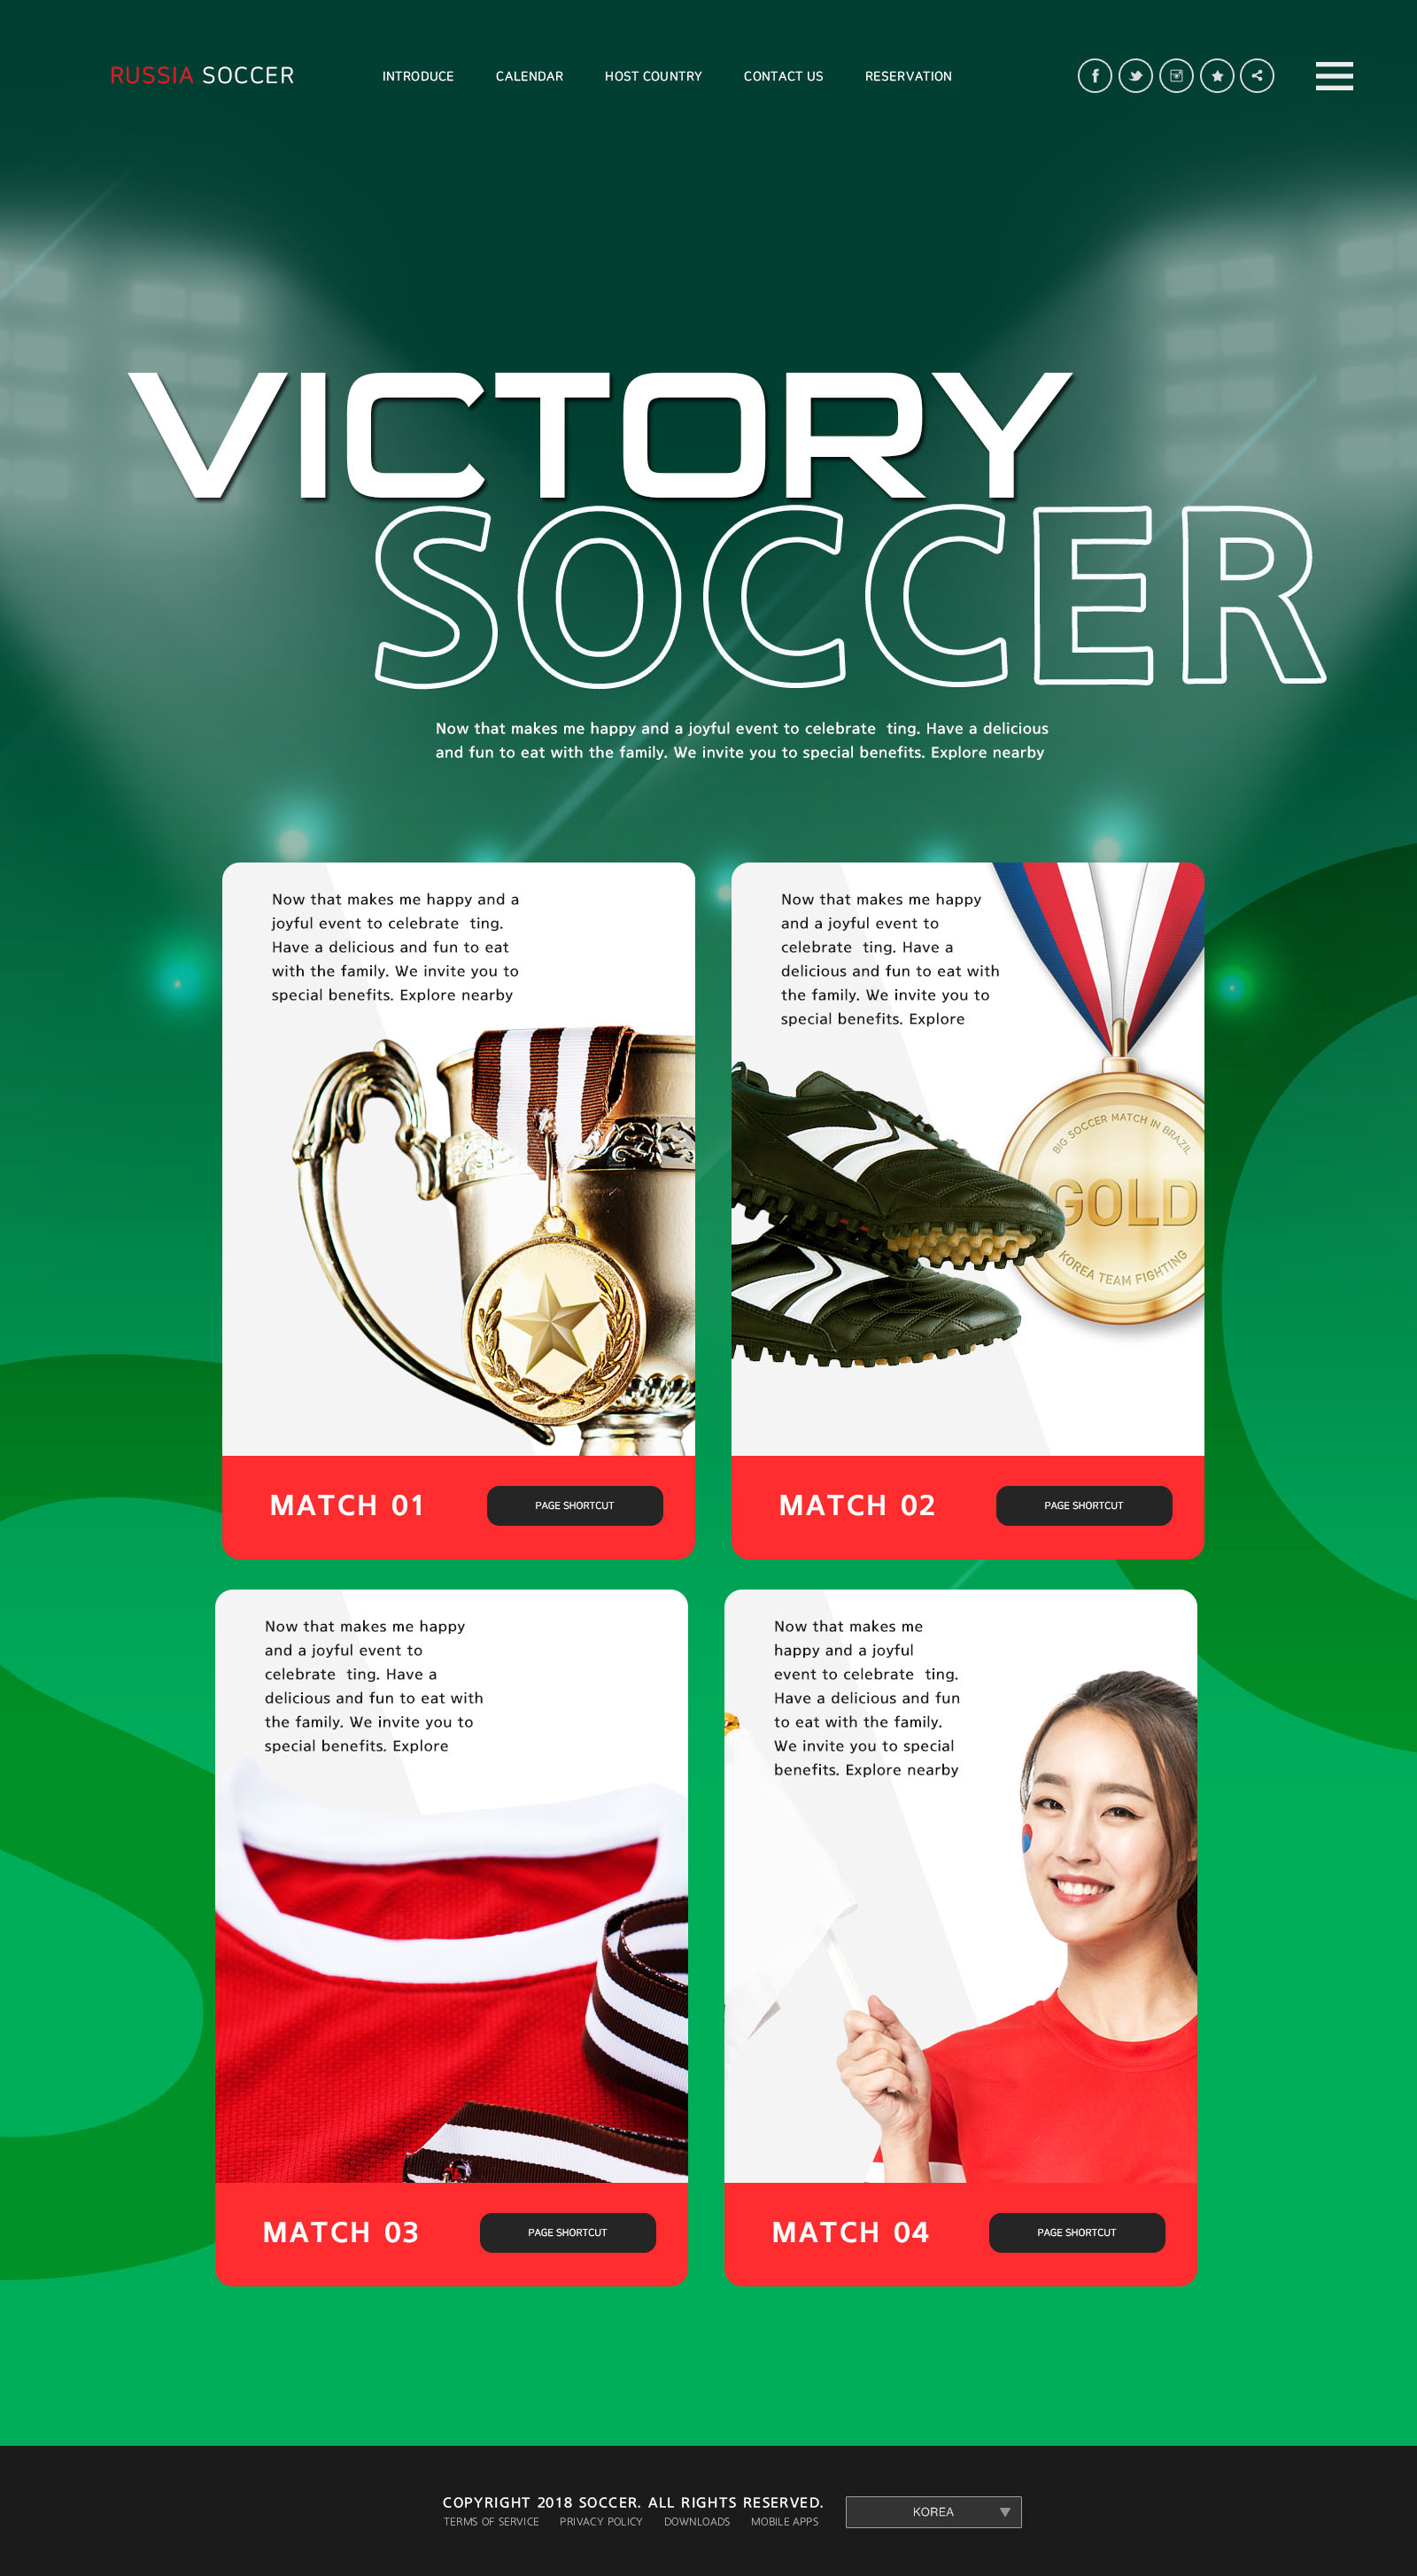 世界杯足球专题广告设计PSD模板大洋岛精选(韩国风格)插图5